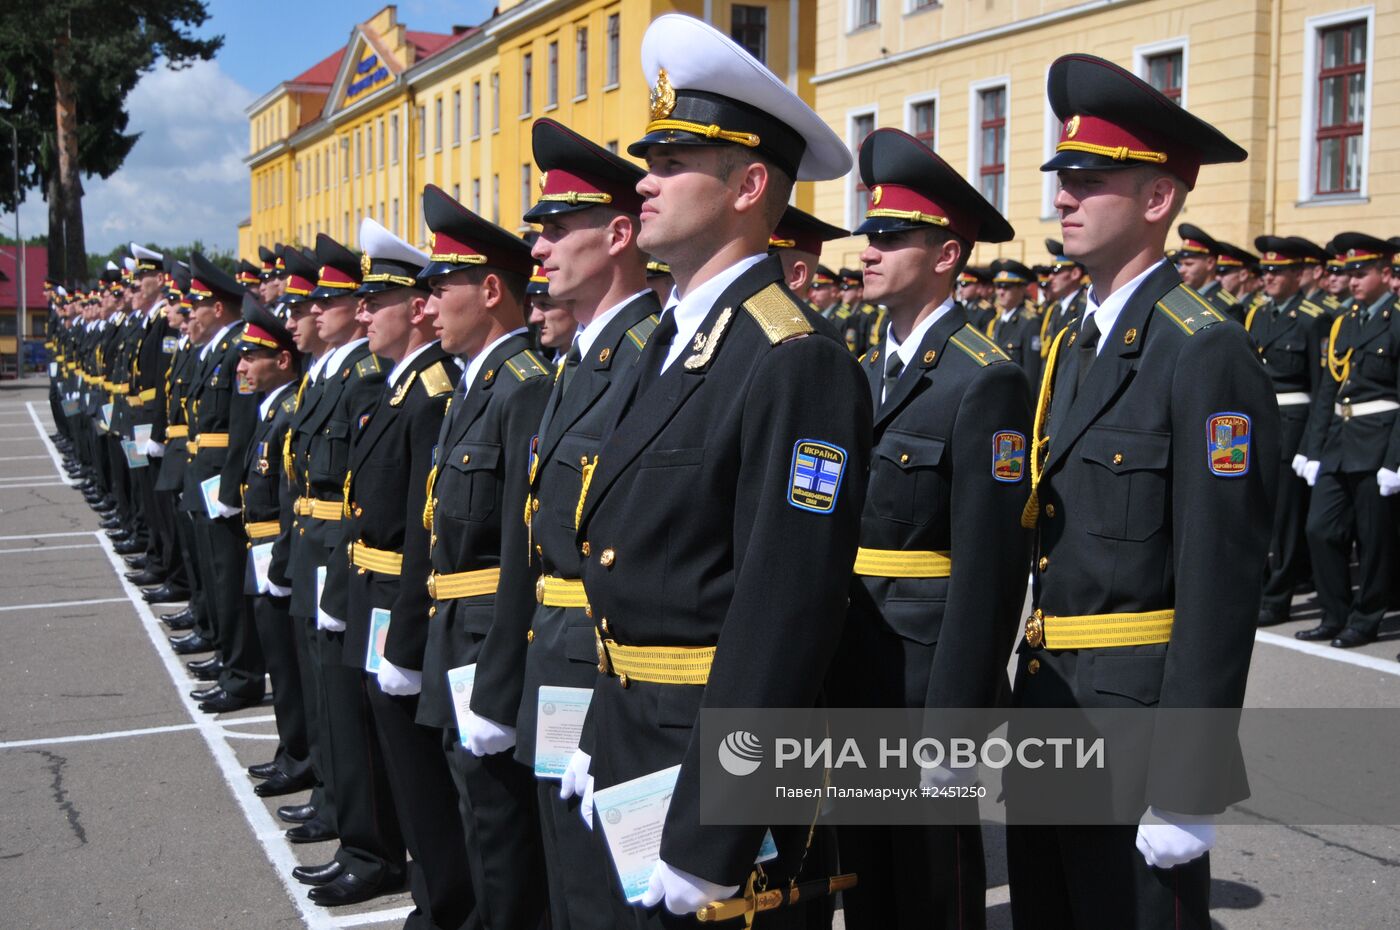 Выпуск молодых офицеров из Академии сухопутных войск Минобороны Украины